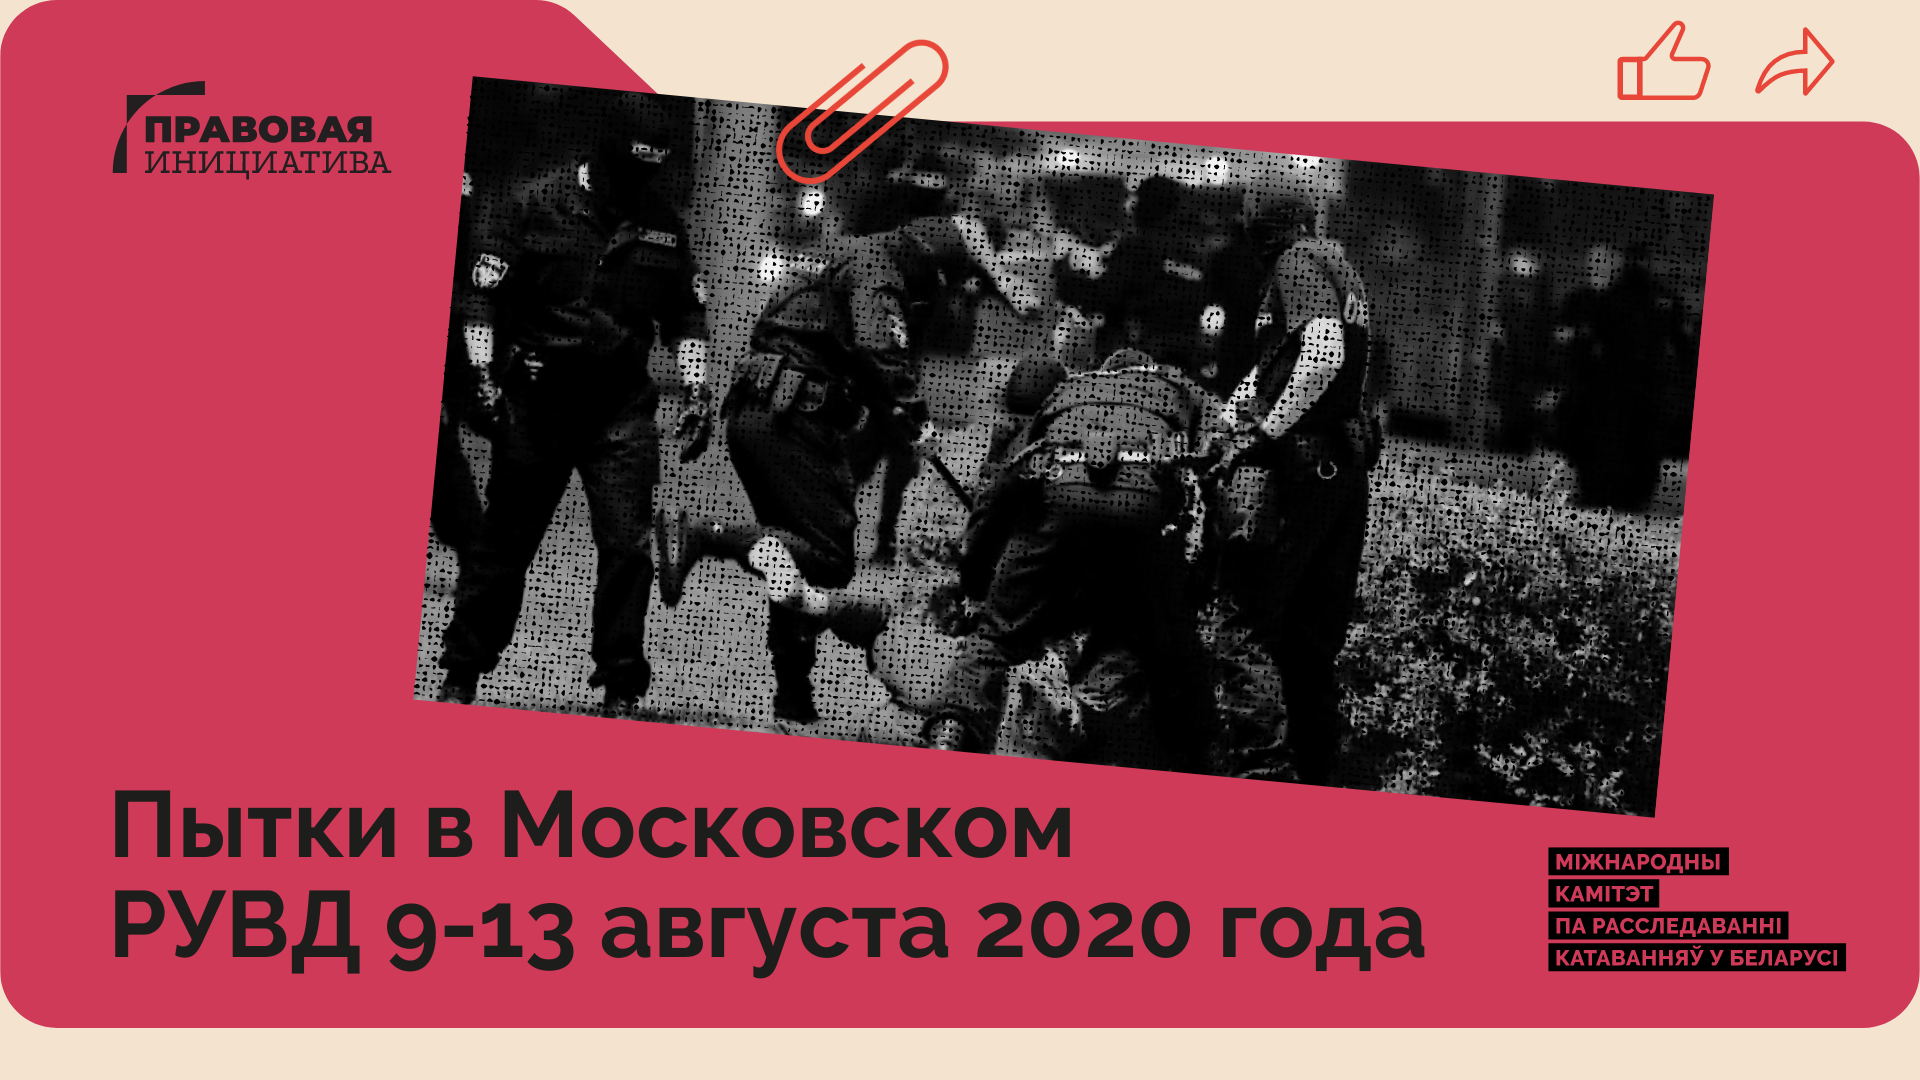 августа 2020 Минска 9-13 в РУВД «Пытки Общественное расследование Московском г. года»